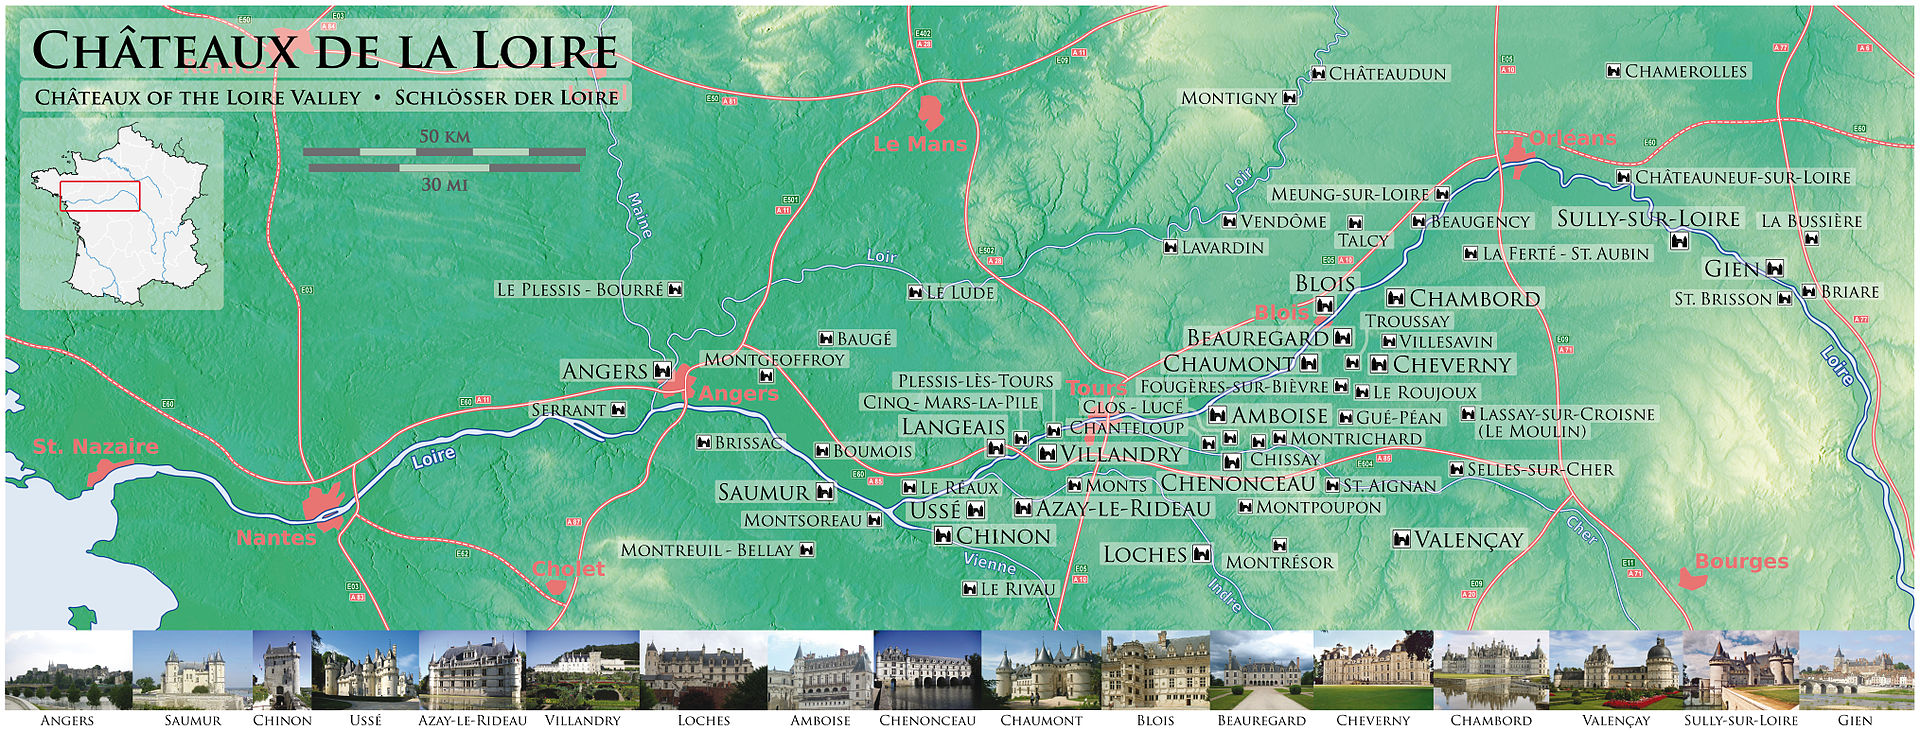 Châteaux de la Loire - Carte du Val de Loire